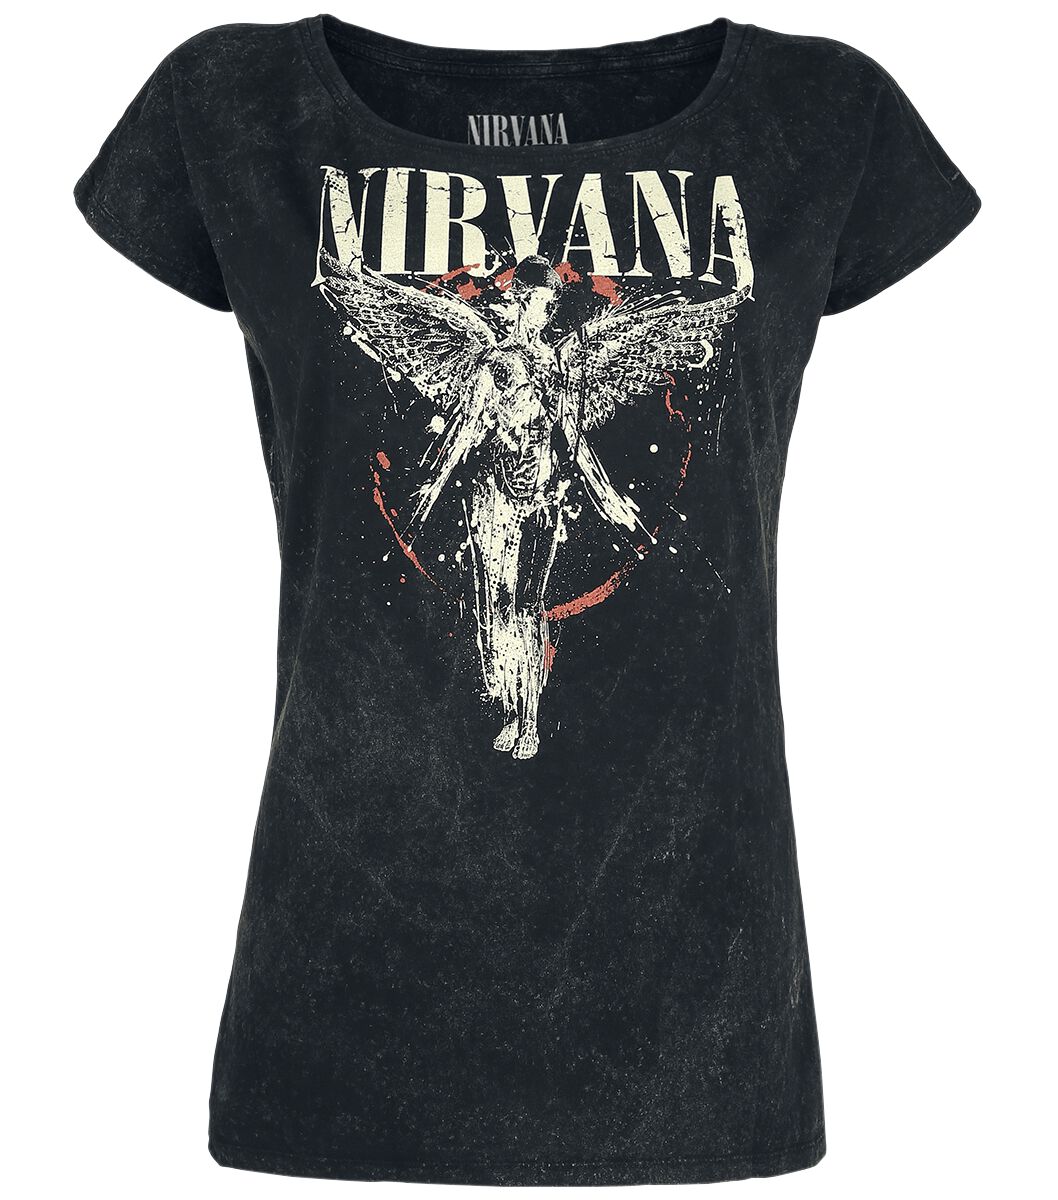 T-Shirt Manches courtes de Nirvana - Angel - S à 3XL - pour Femme - anthracite